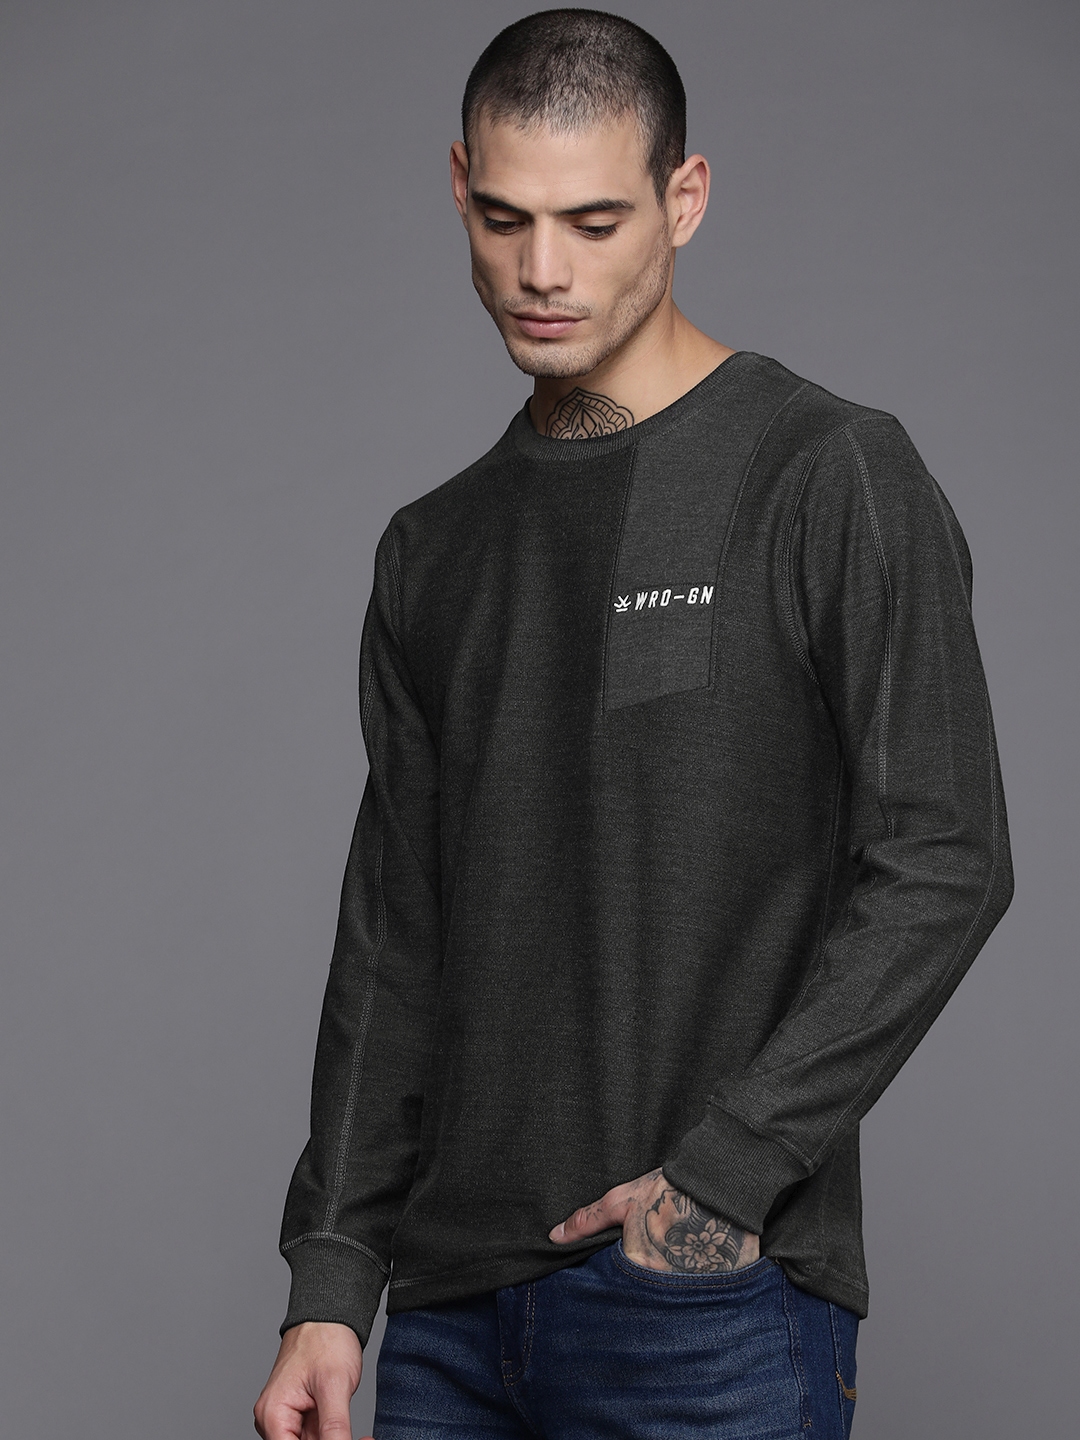 Buy WROGN Men Charcoal Black Embroidered Sweatshirt - Sweatshirts for ...